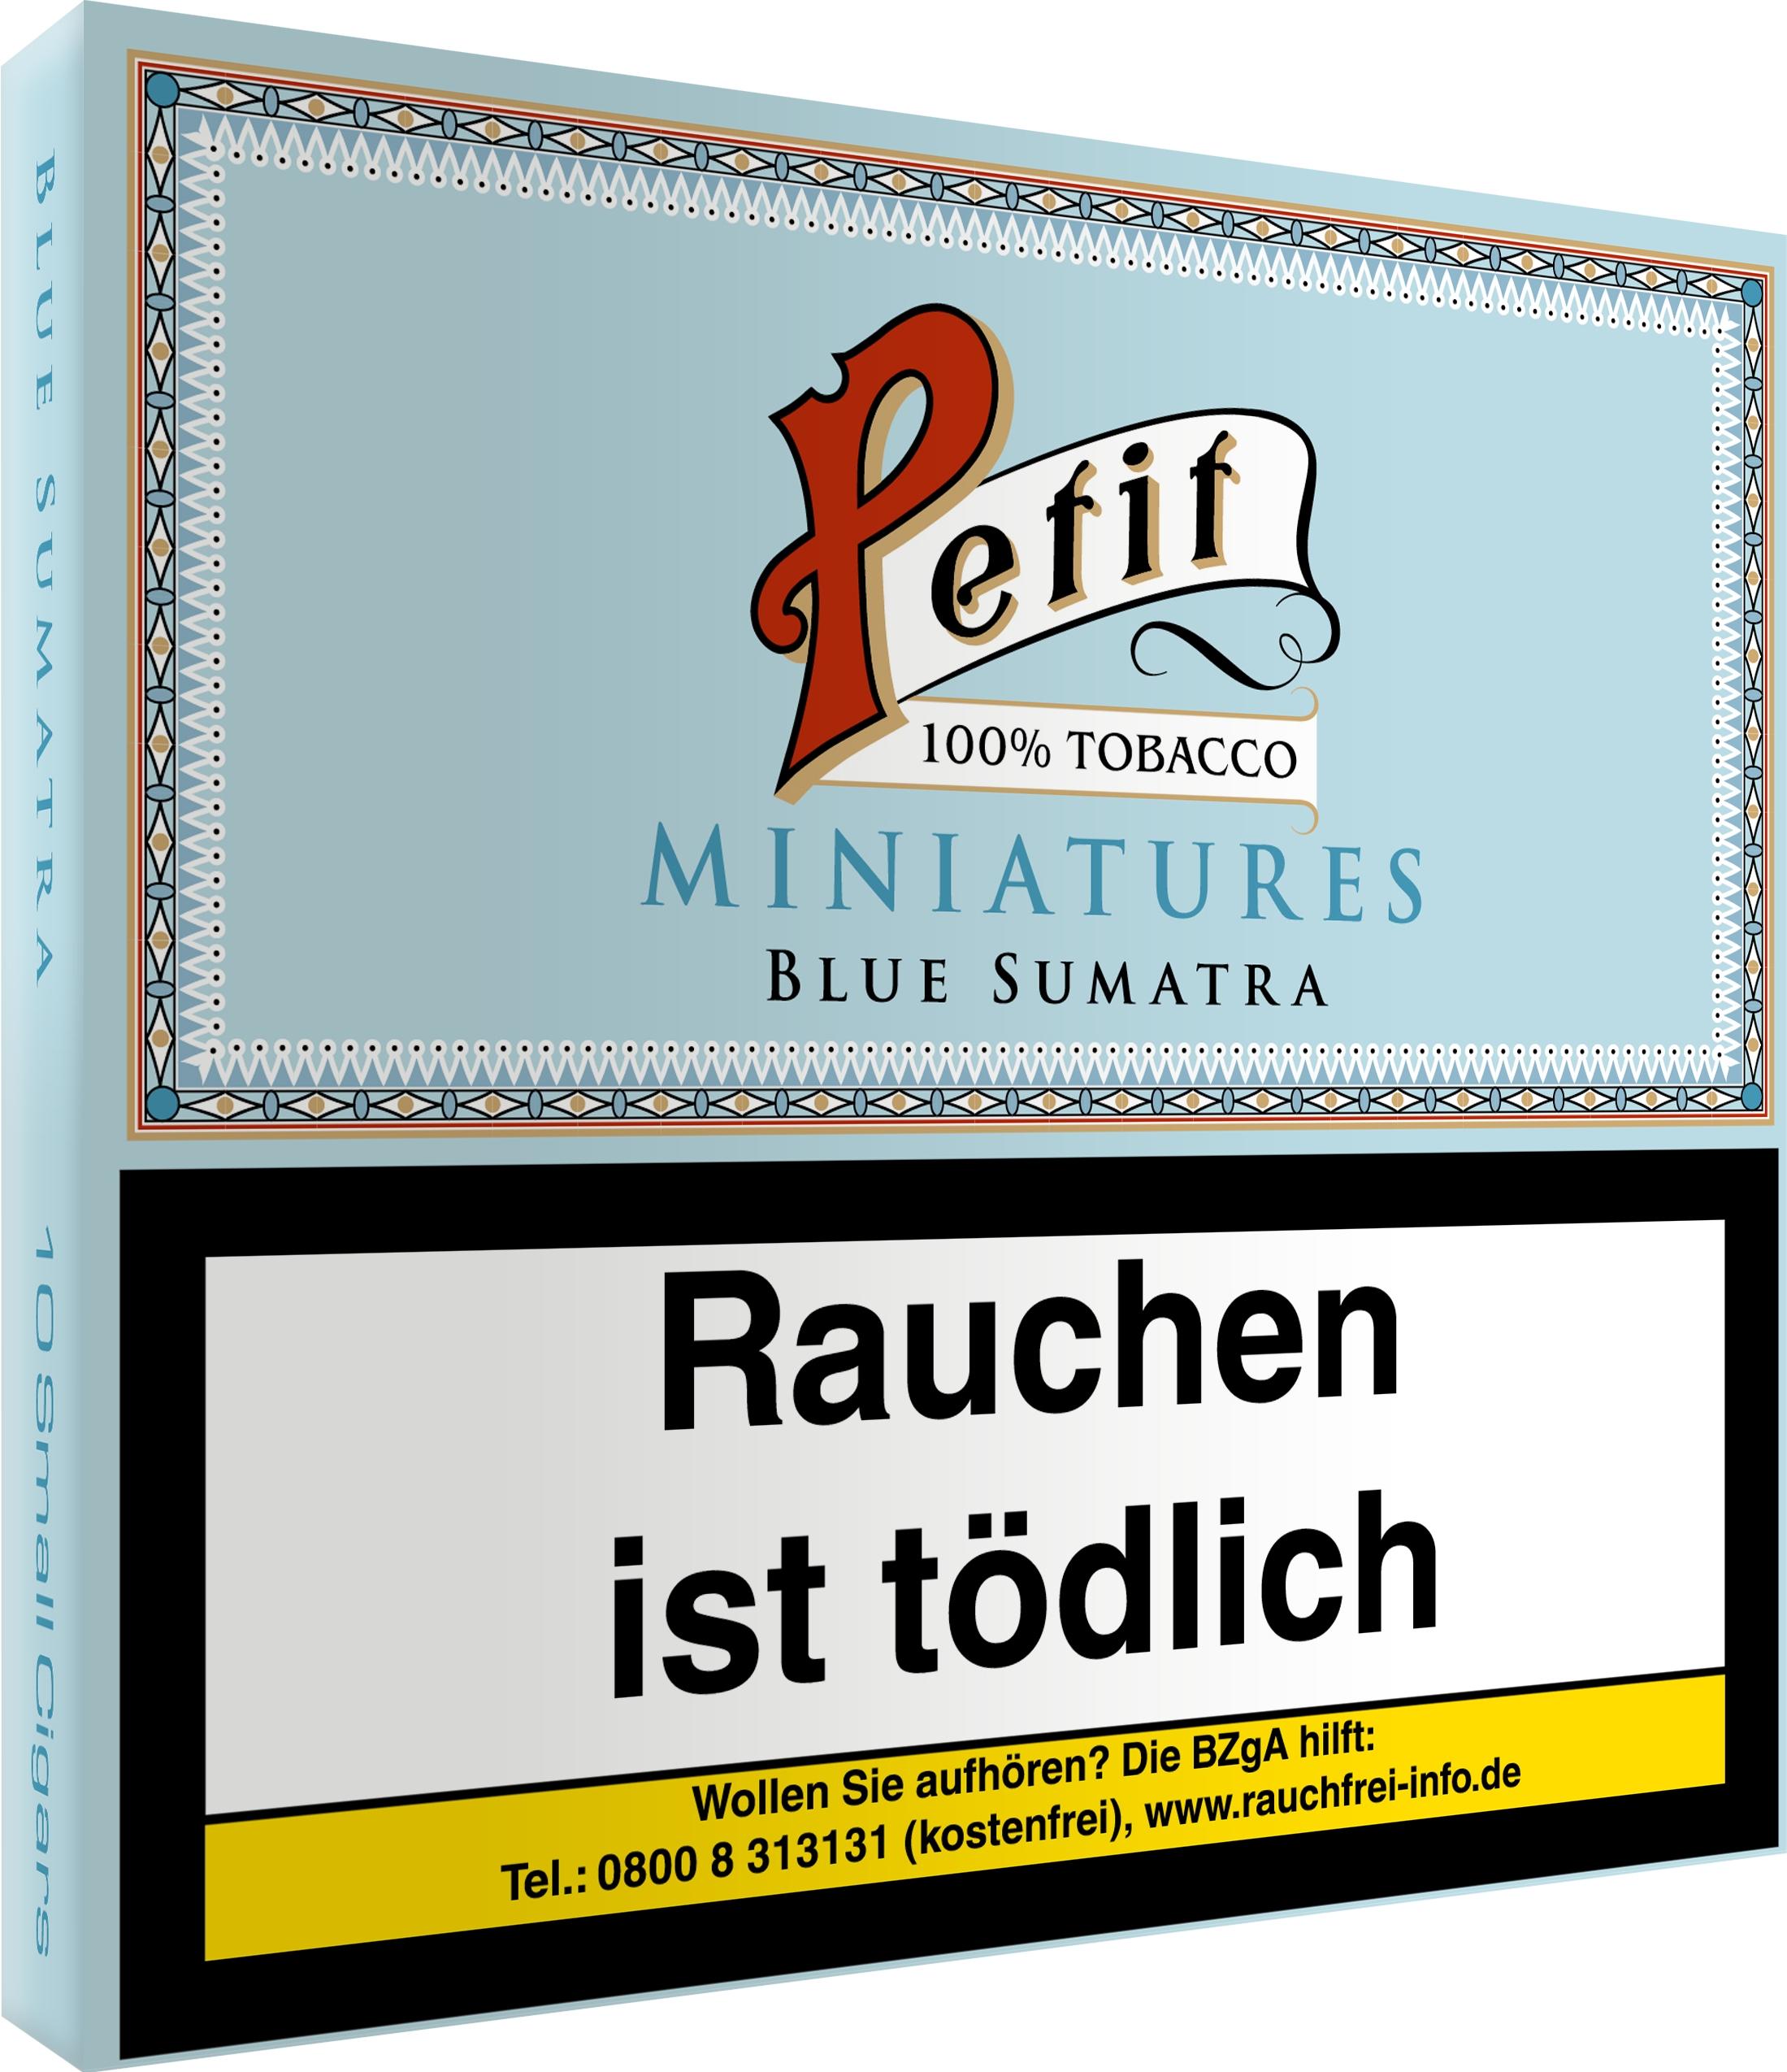 Nobel Petit Zigarillos Miniatures Blue Sumatra 1 Stange